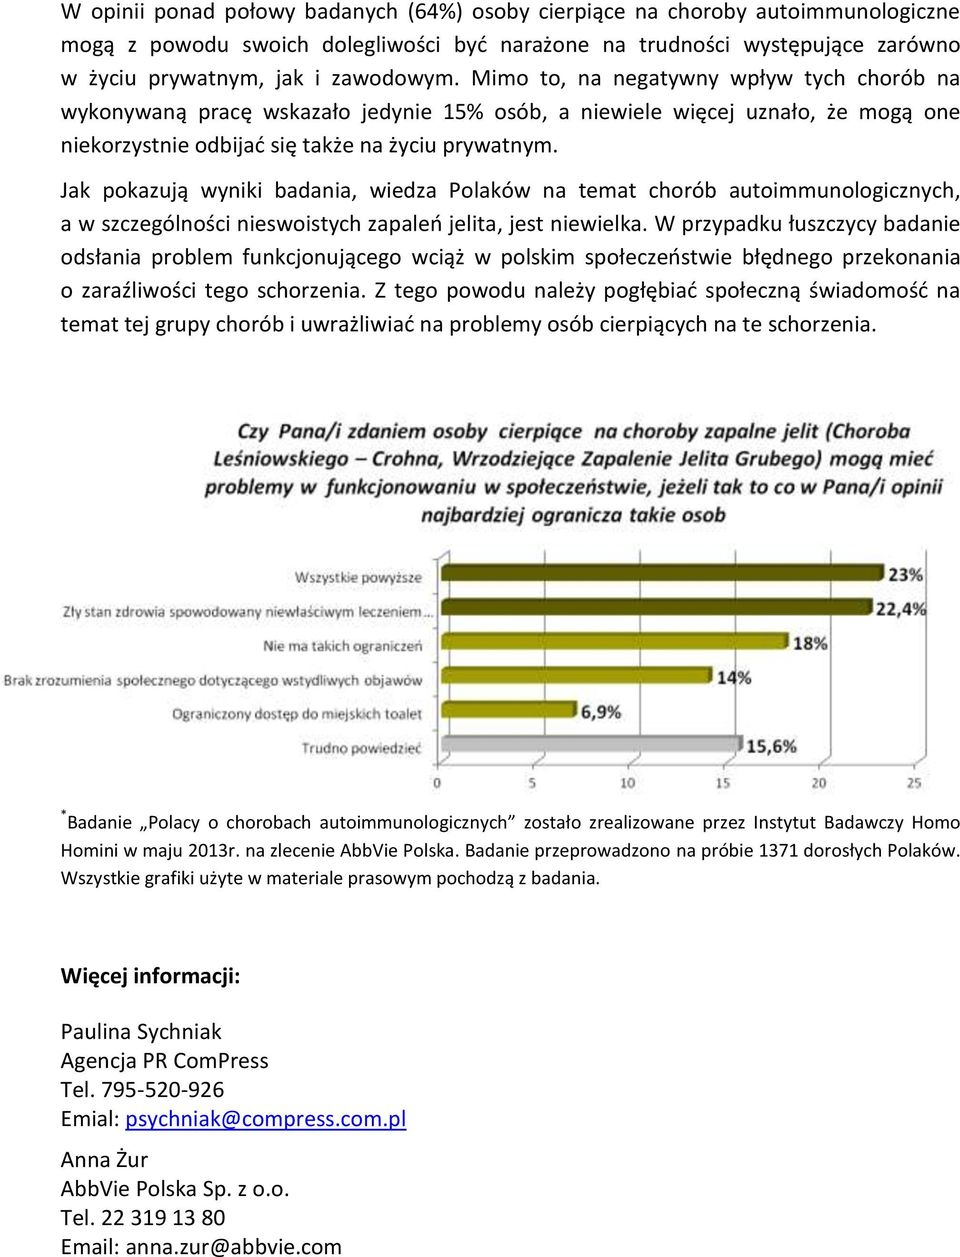 Jak pokazują wyniki badania, wiedza Polaków na temat chorób autoimmunologicznych, a w szczególności nieswoistych zapaleń jelita, jest niewielka.